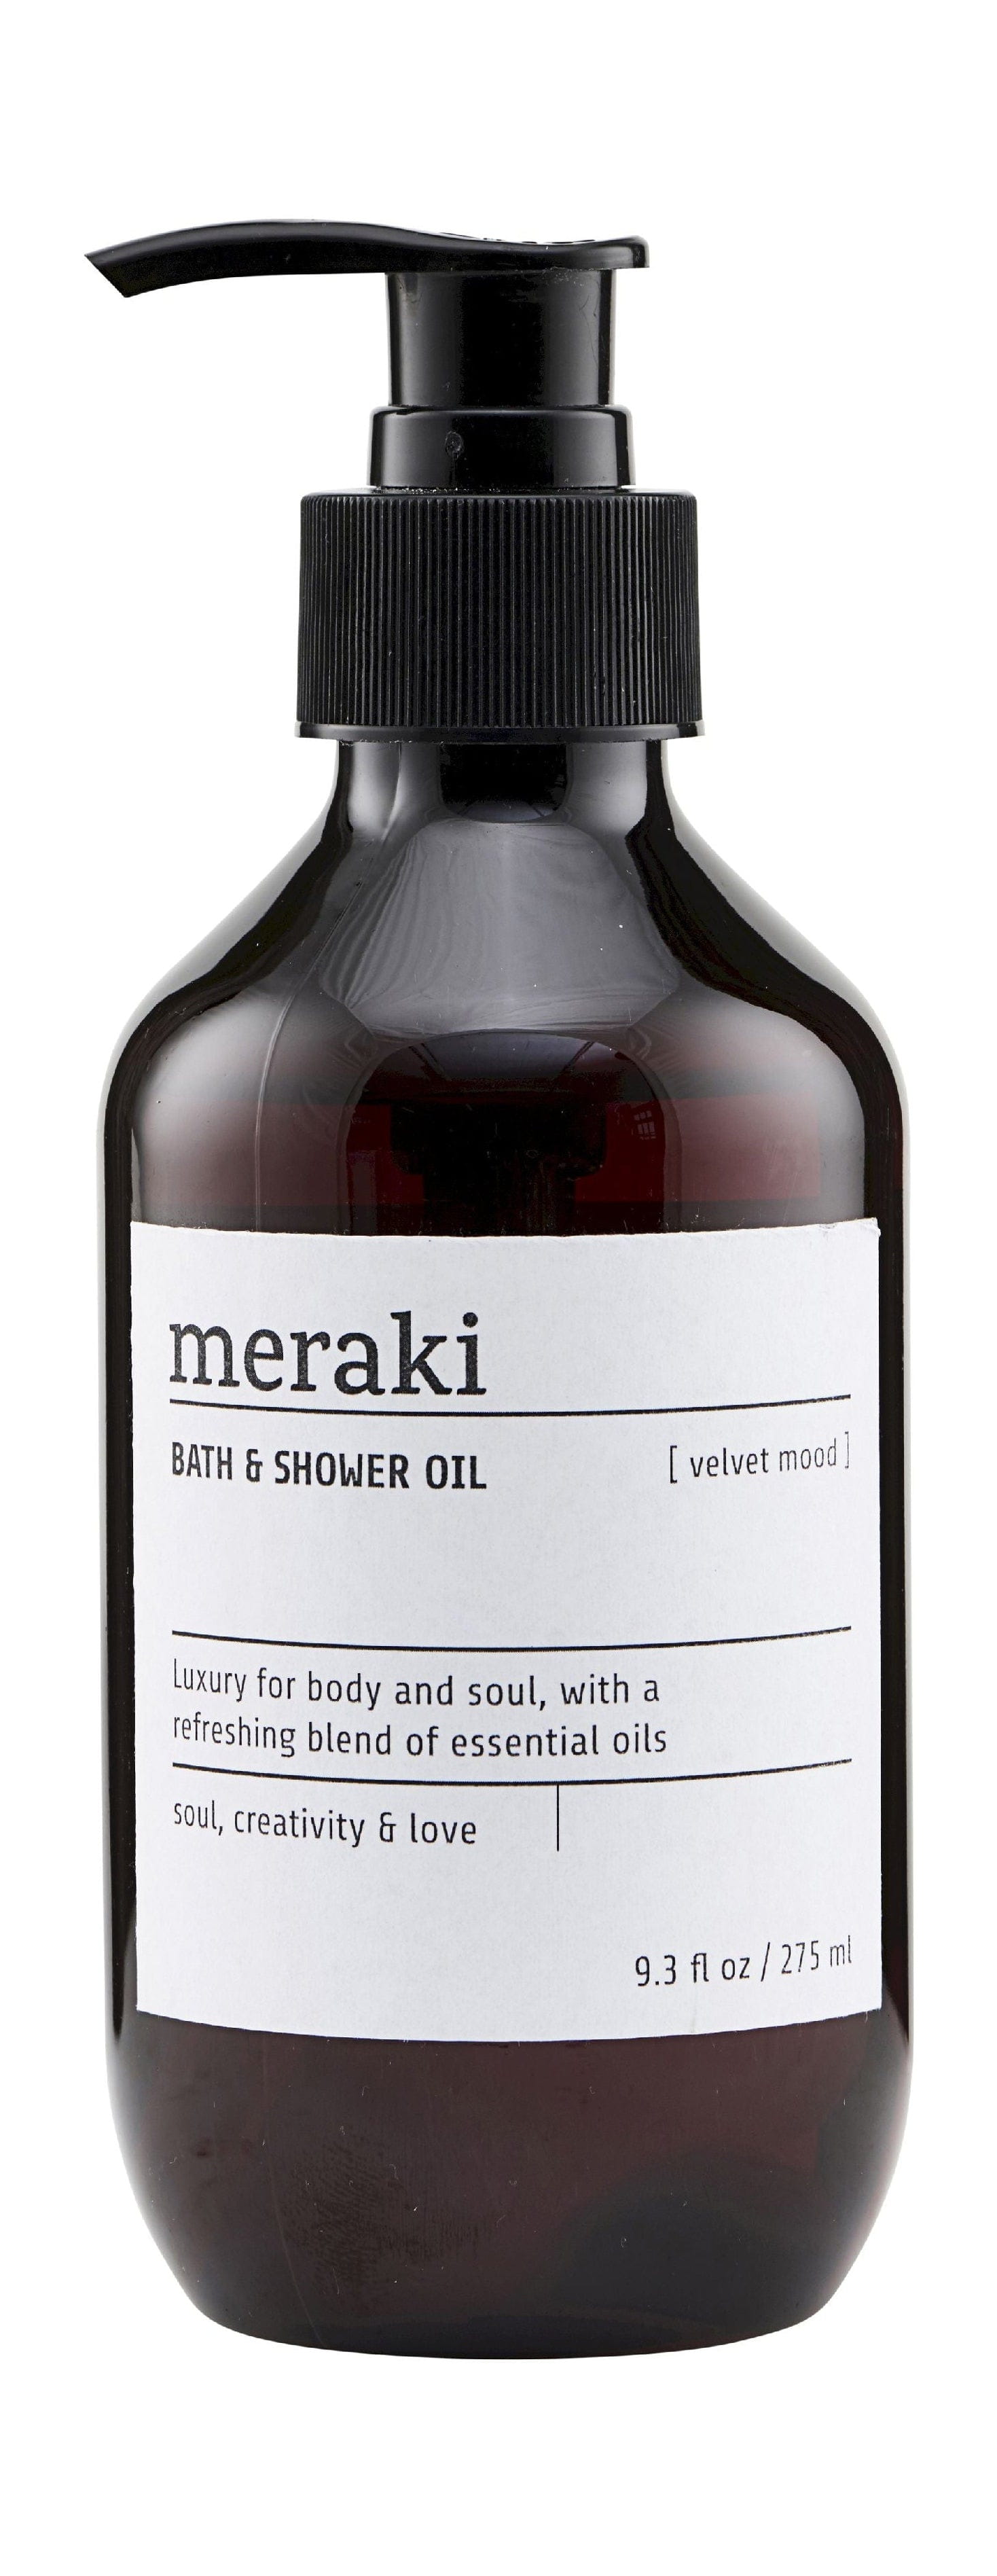 Meraki Bad & Shower Oil 275 ml, fløjlstemning